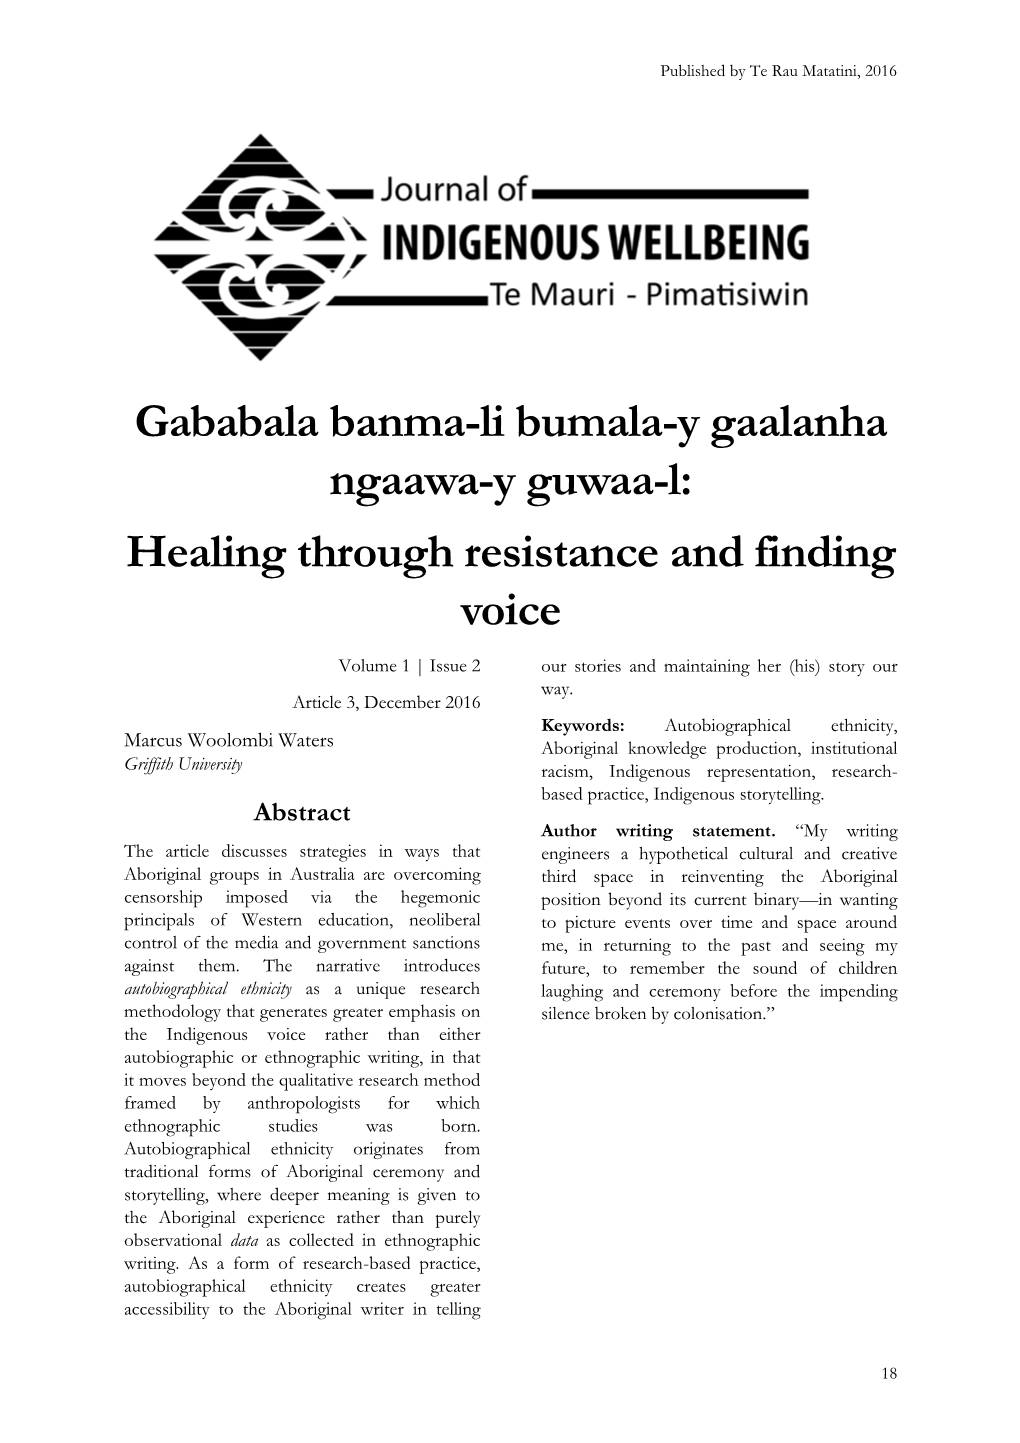 Gababala Banma-Li Bumala-Y Gaalanha Ngaawa-Y Guwaa-L: Healing Through Resistance and Finding Voice